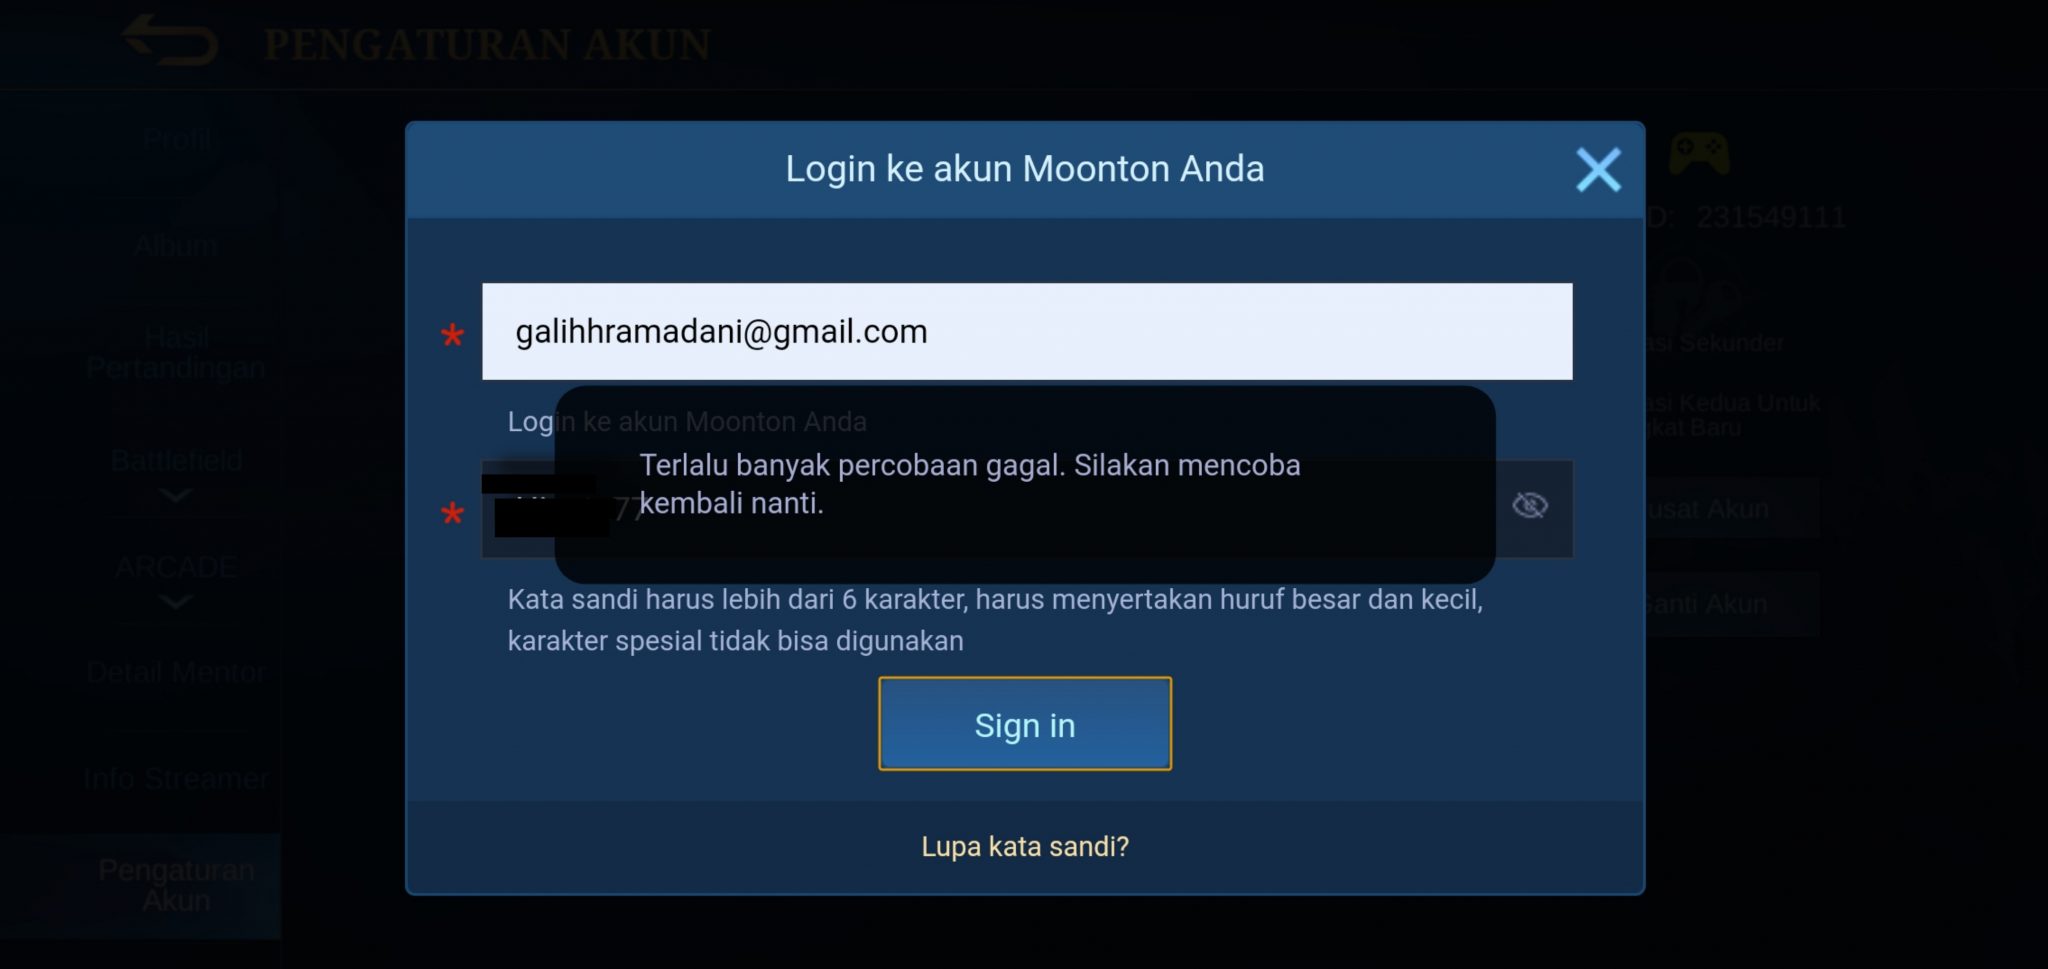 Создать аккаунт moontoon mobile legends. Moonton.com регистрация. Moontoon удалить аккаунт. Как посмотреть пароль от аккаунта Moonton. Moonton com регистрация на русском языке.